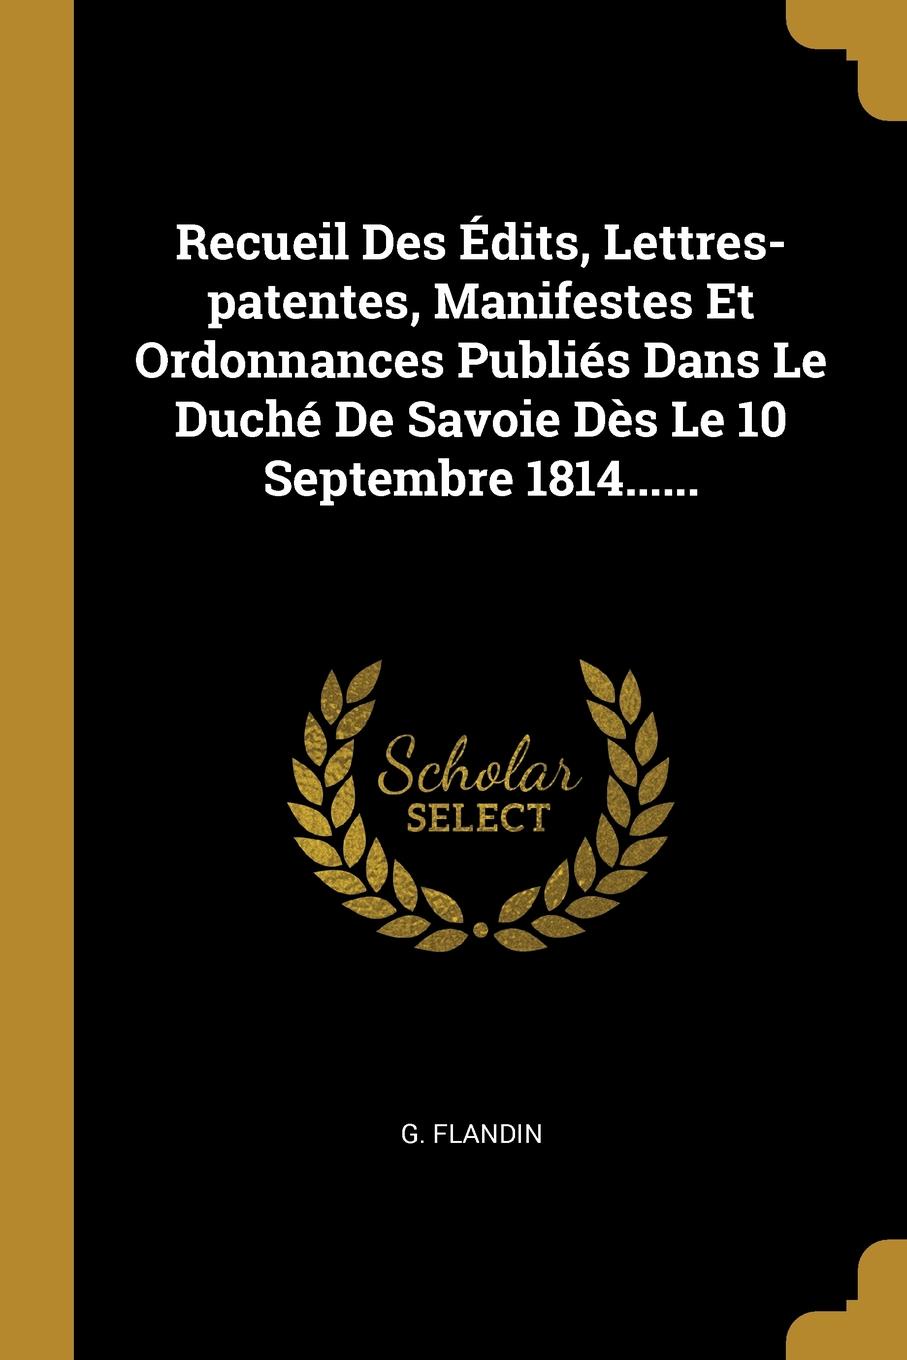 Recueil Des Edits, Lettres-patentes, Manifestes Et Ordonnances Publies Dans Le Duche De Savoie Des Le 10 Septembre 1814......